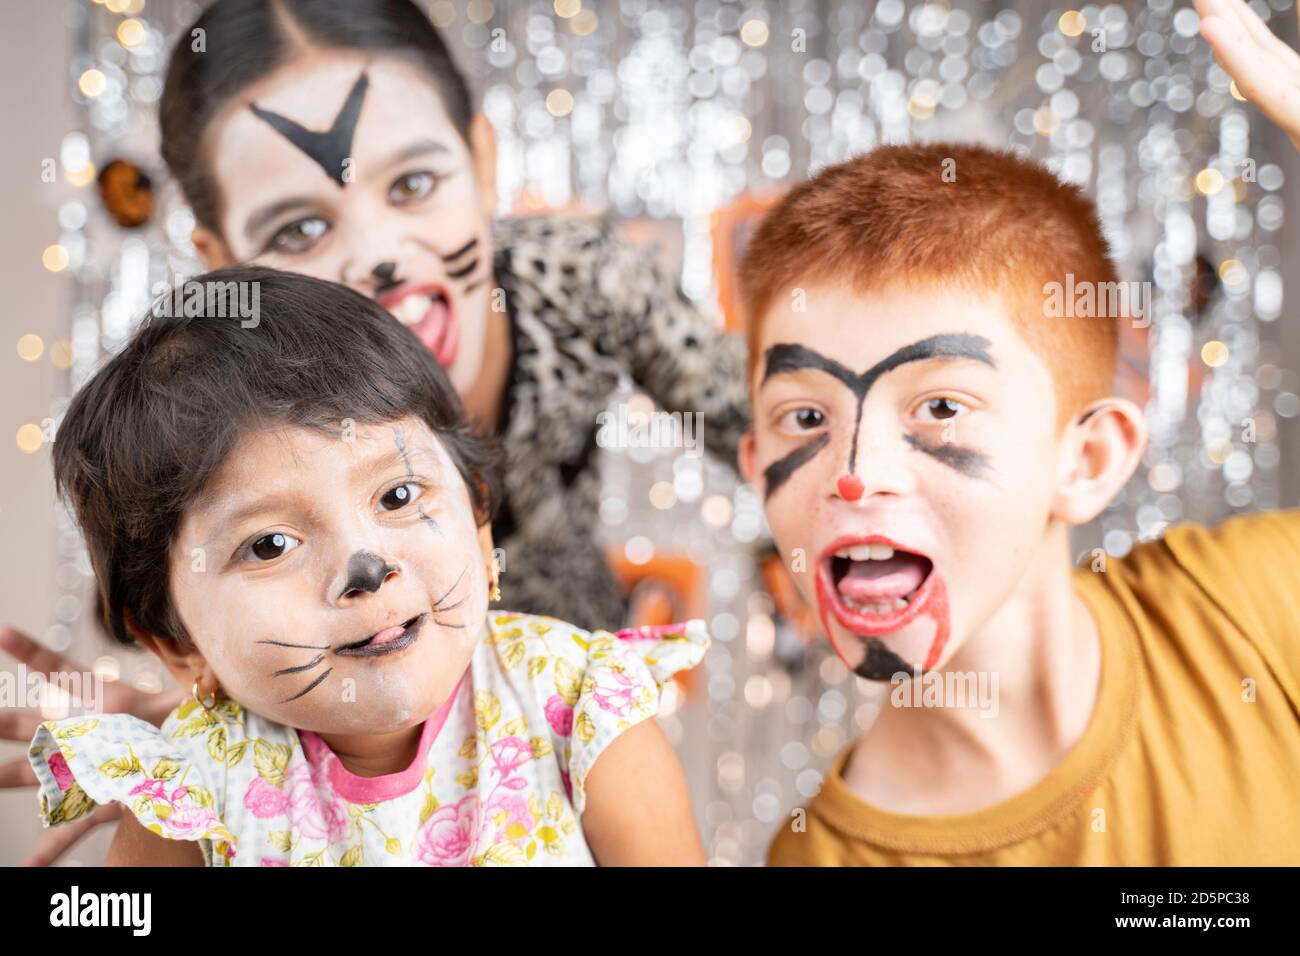 Gruppe von Kindern in Halloween-Kostümen gestikulierend und machen gruselige oder gruselige Gesichter auf dekorierten Hintergrund durch Blick in die Kamera. Stockfoto